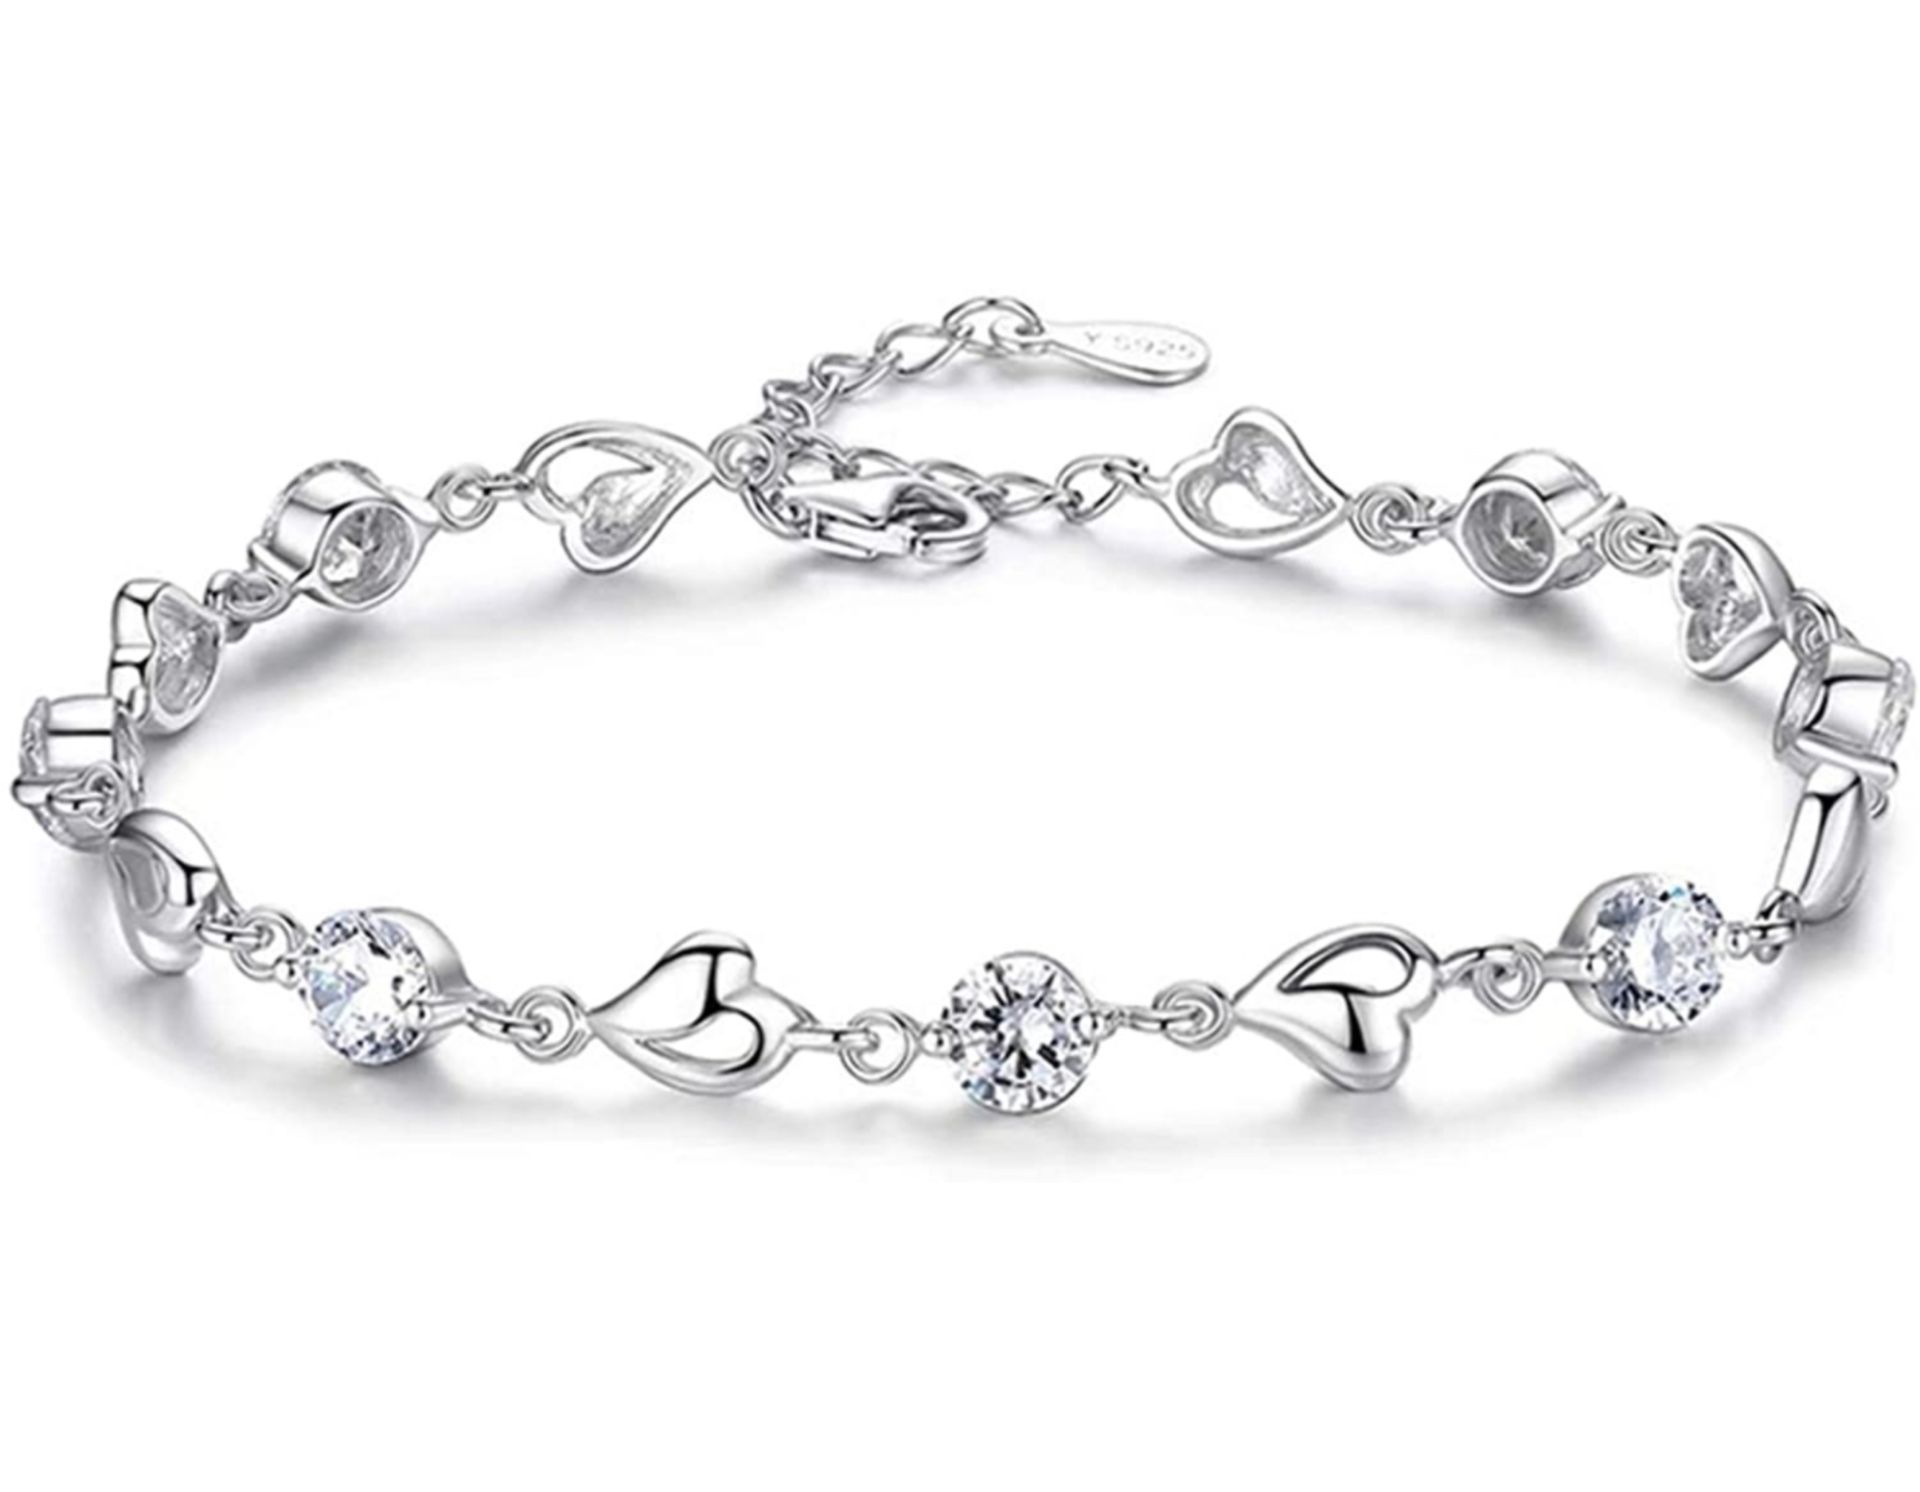 Selead 999 Silver Jewellery Elegant Womens Bracelet RRP £41.99